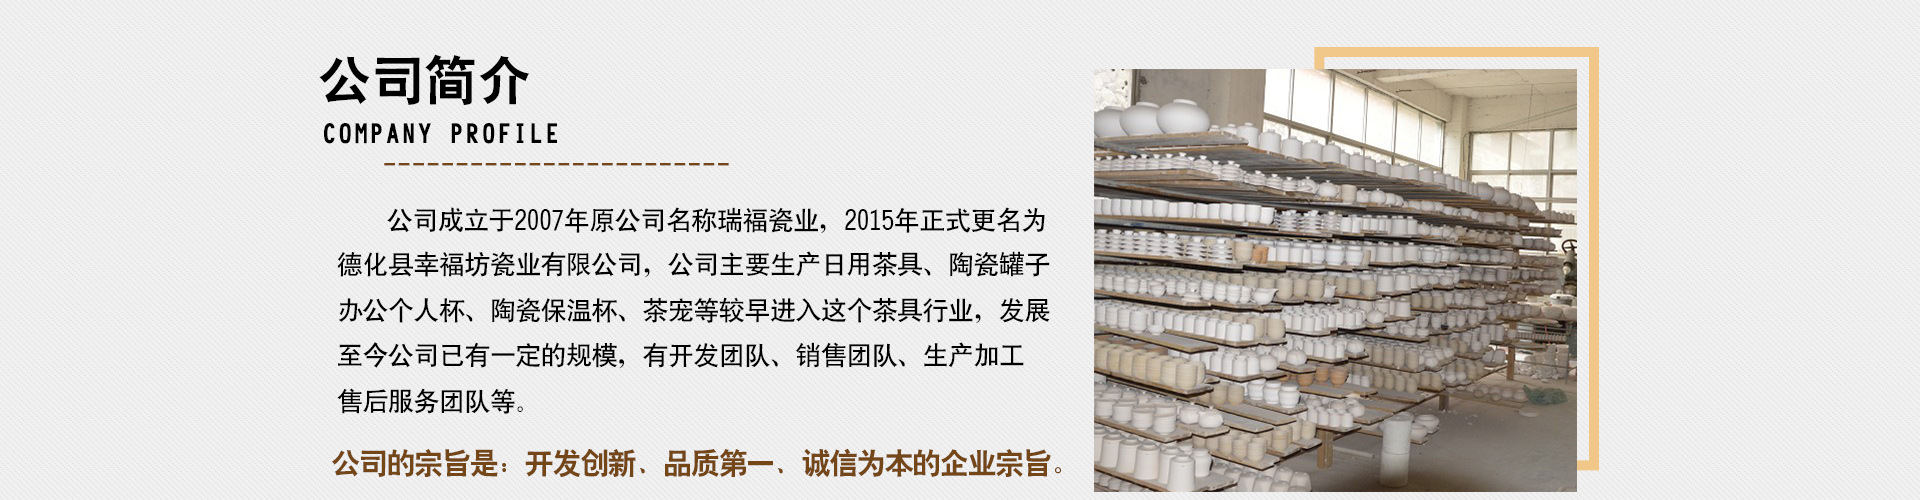 德化陶瓷茶叶罐礼盒套装 中式青花茶叶储存罐陶瓷茶叶罐礼盒套装示例图14